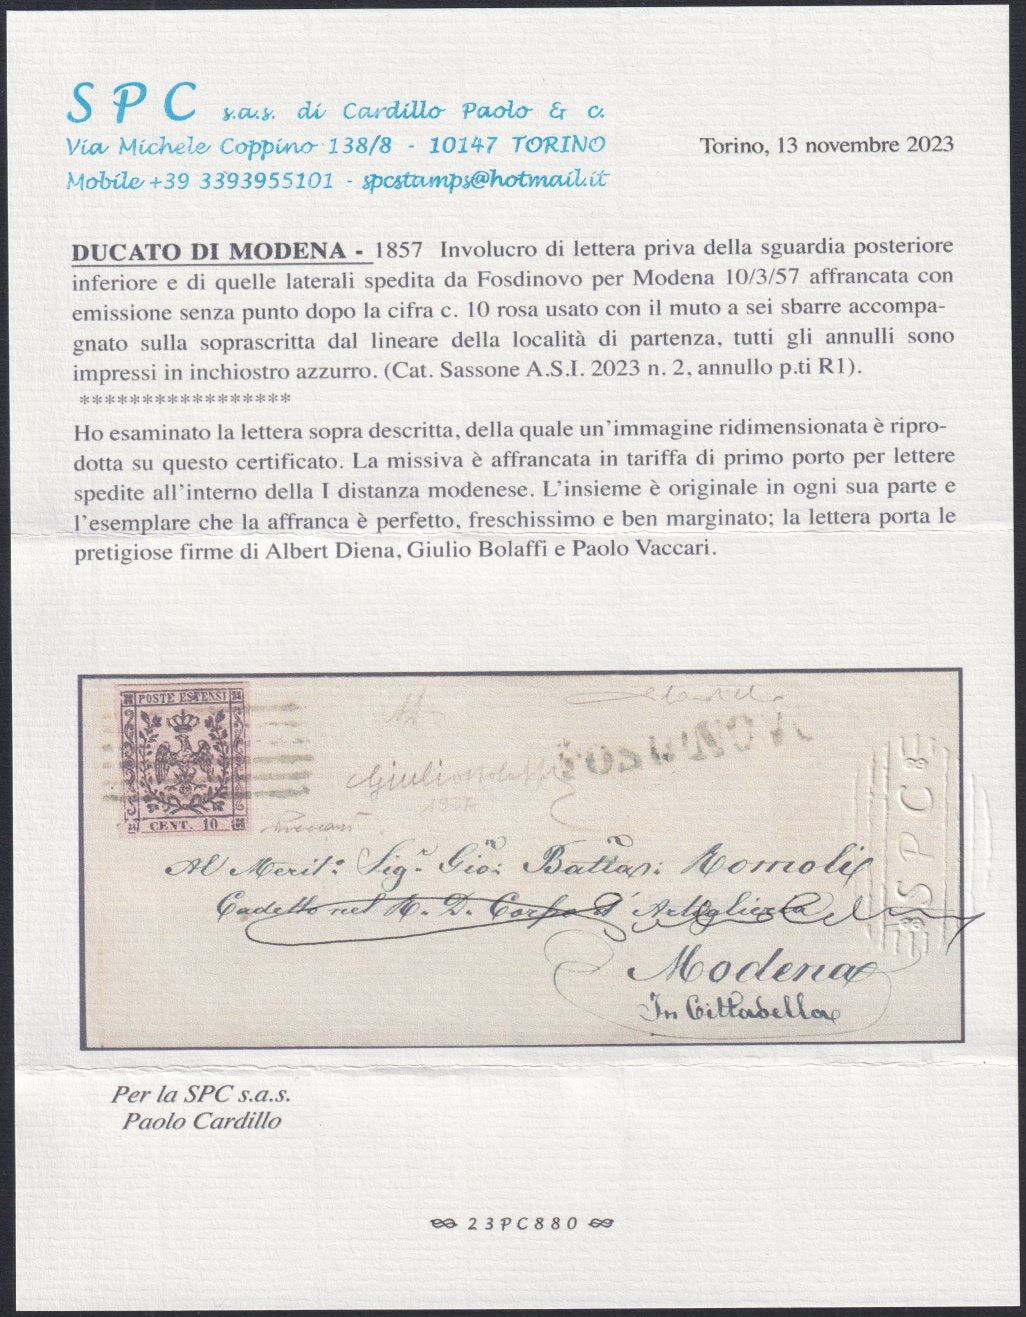 MSP8 - 1857 - Emissione senza punto dopo la cifra, c. 10 rosa su lettera da Fosdinovo per Modena 10/3/57 (2, p.ti R1)